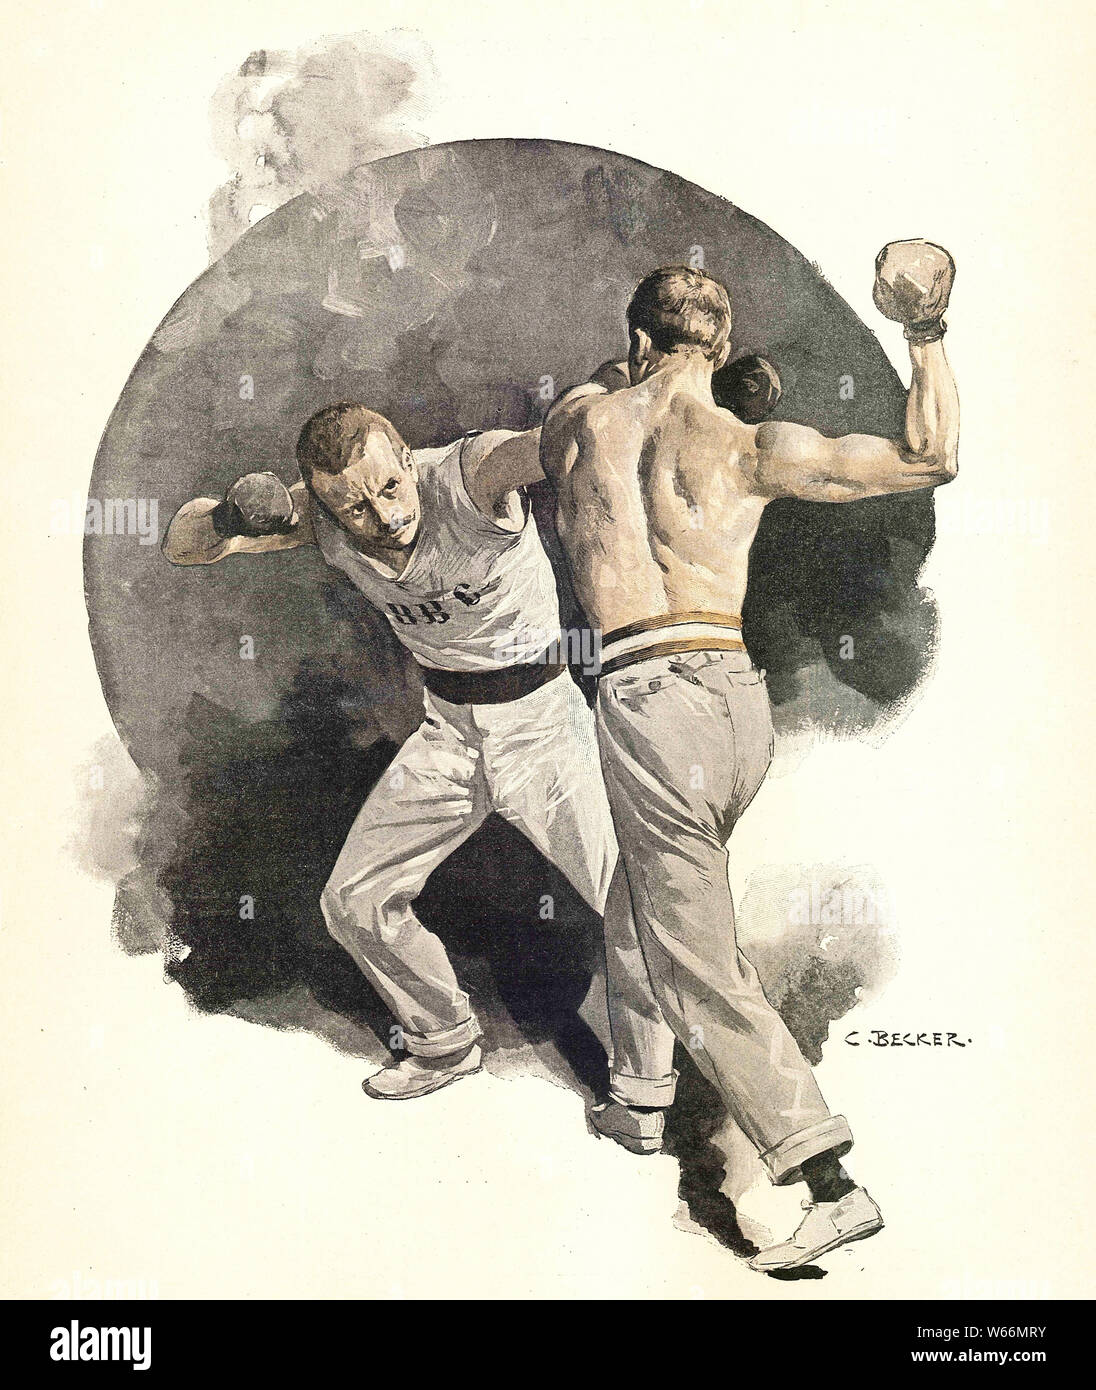 Deux boxeurs professionnels se battent, peint par C. Becker au 19e siècle Banque D'Images